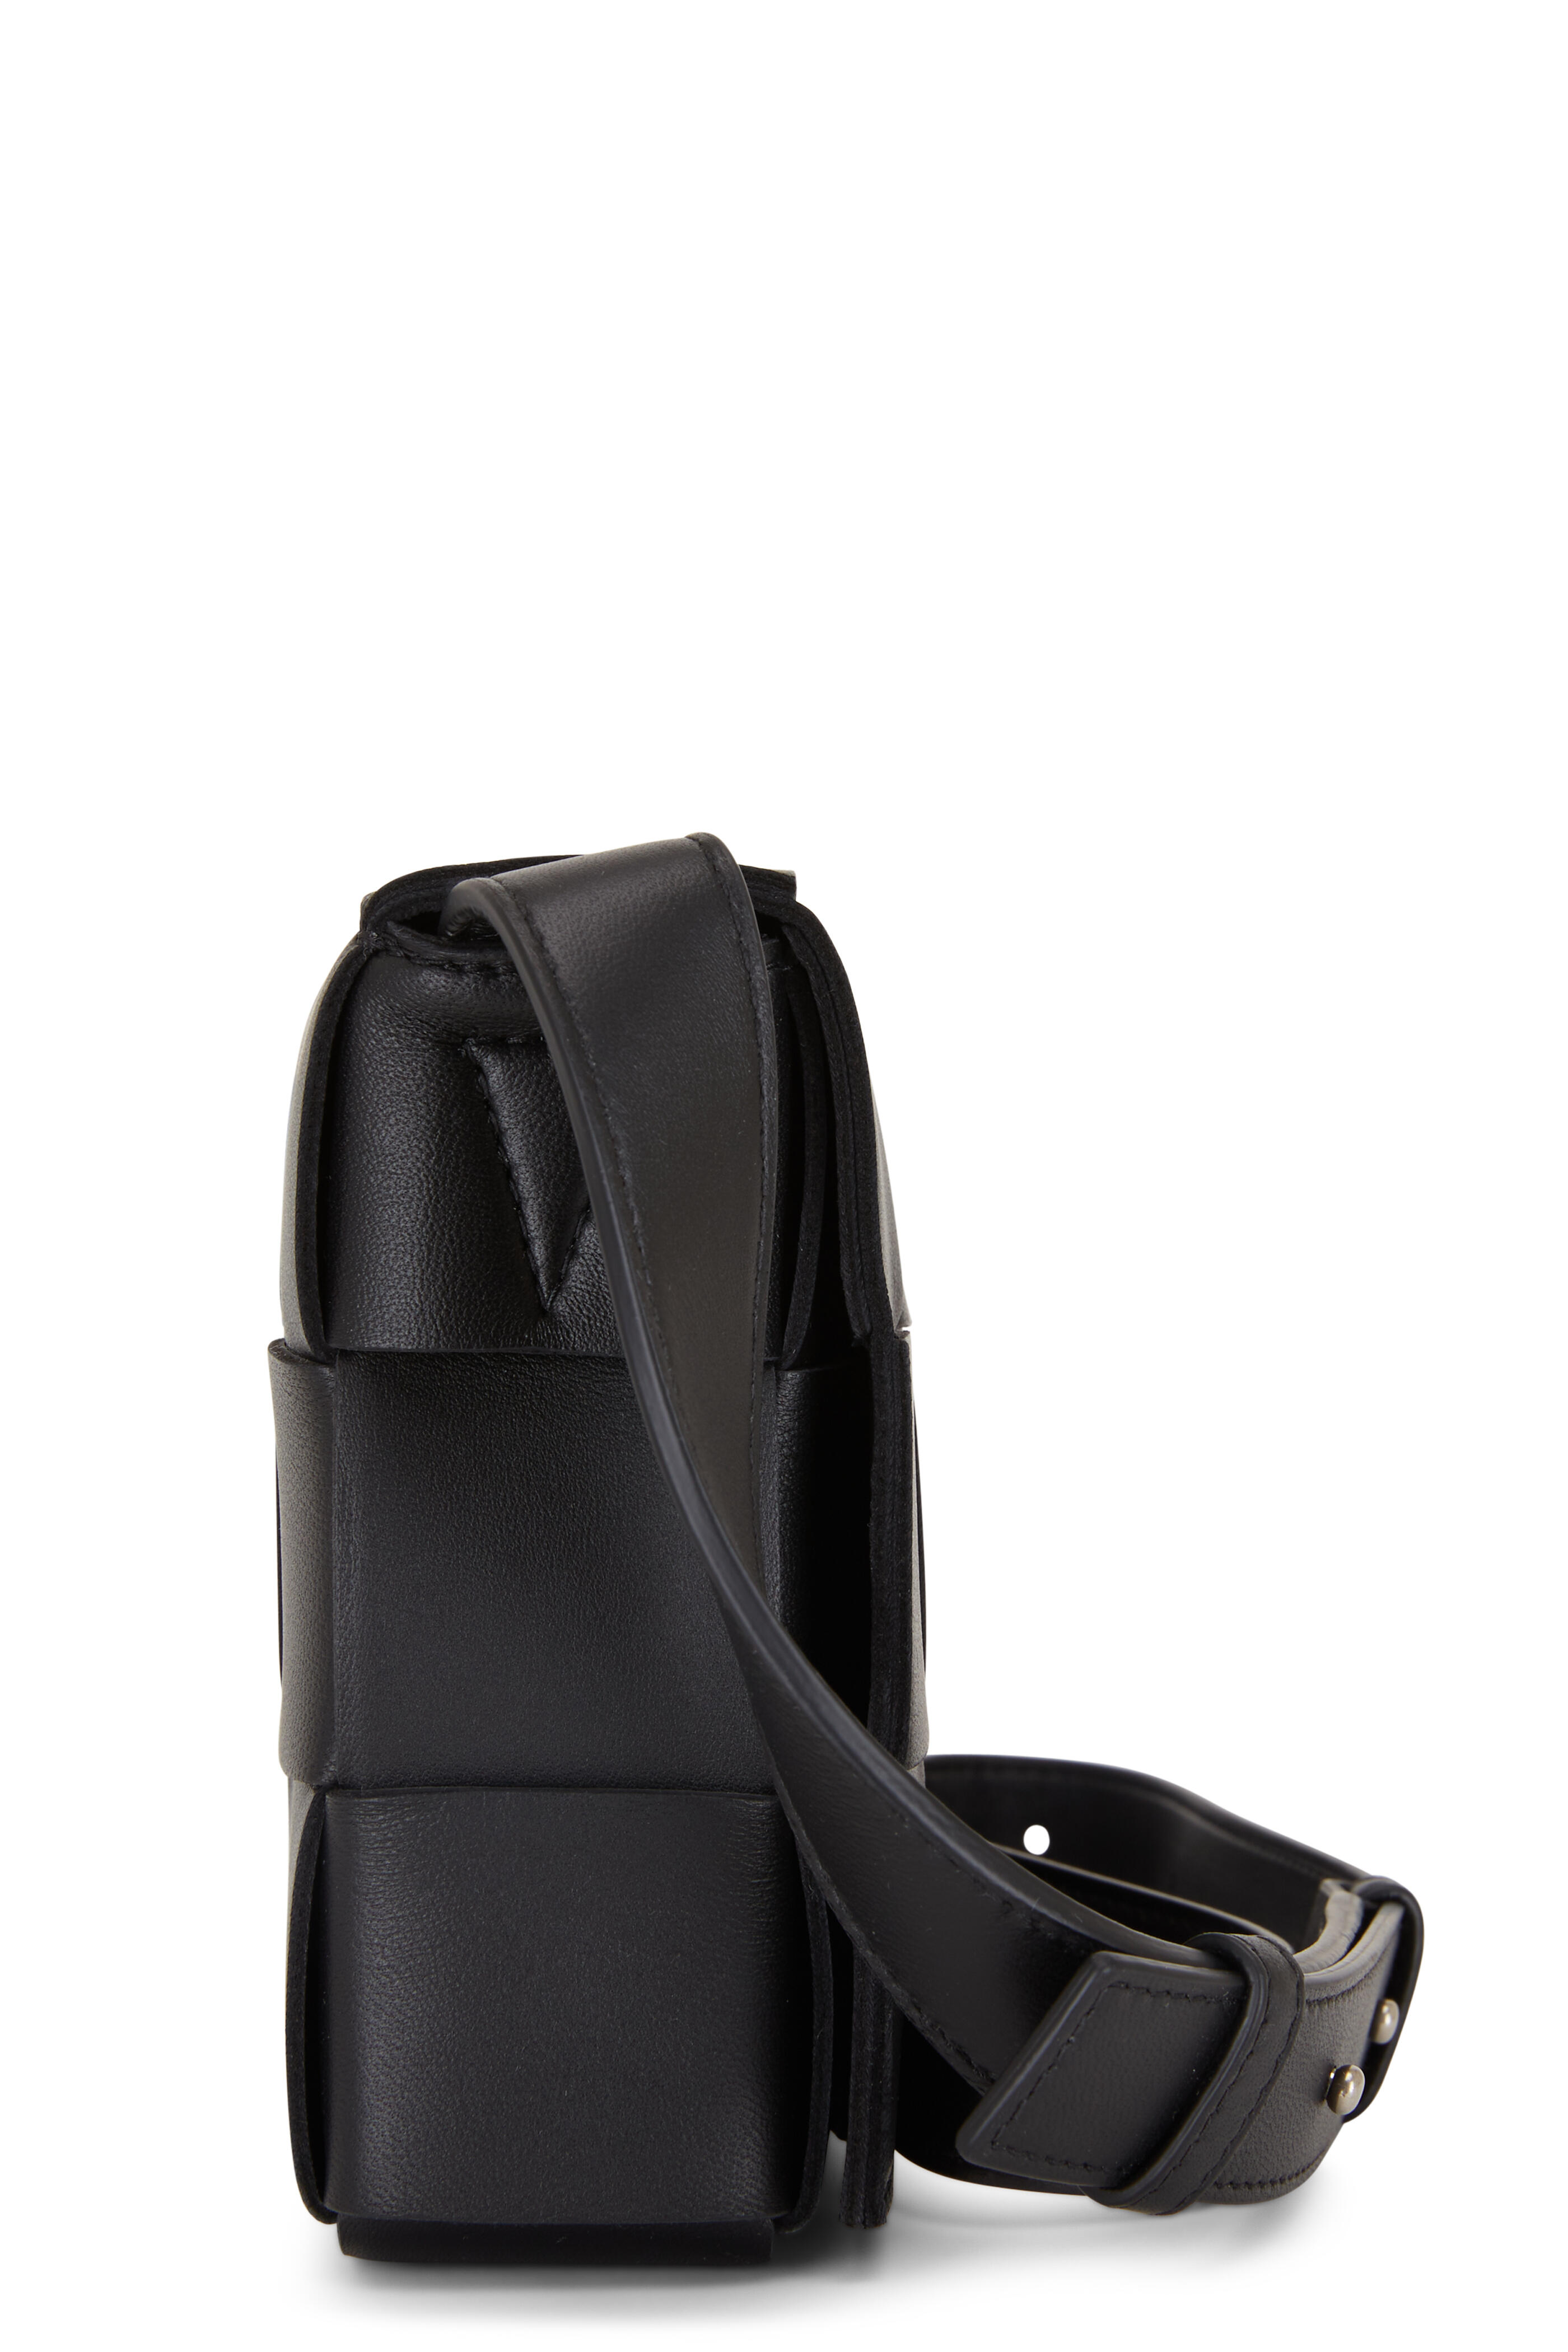 Cassette Camera Leather Crossbody Bag in Black - Bottega Veneta